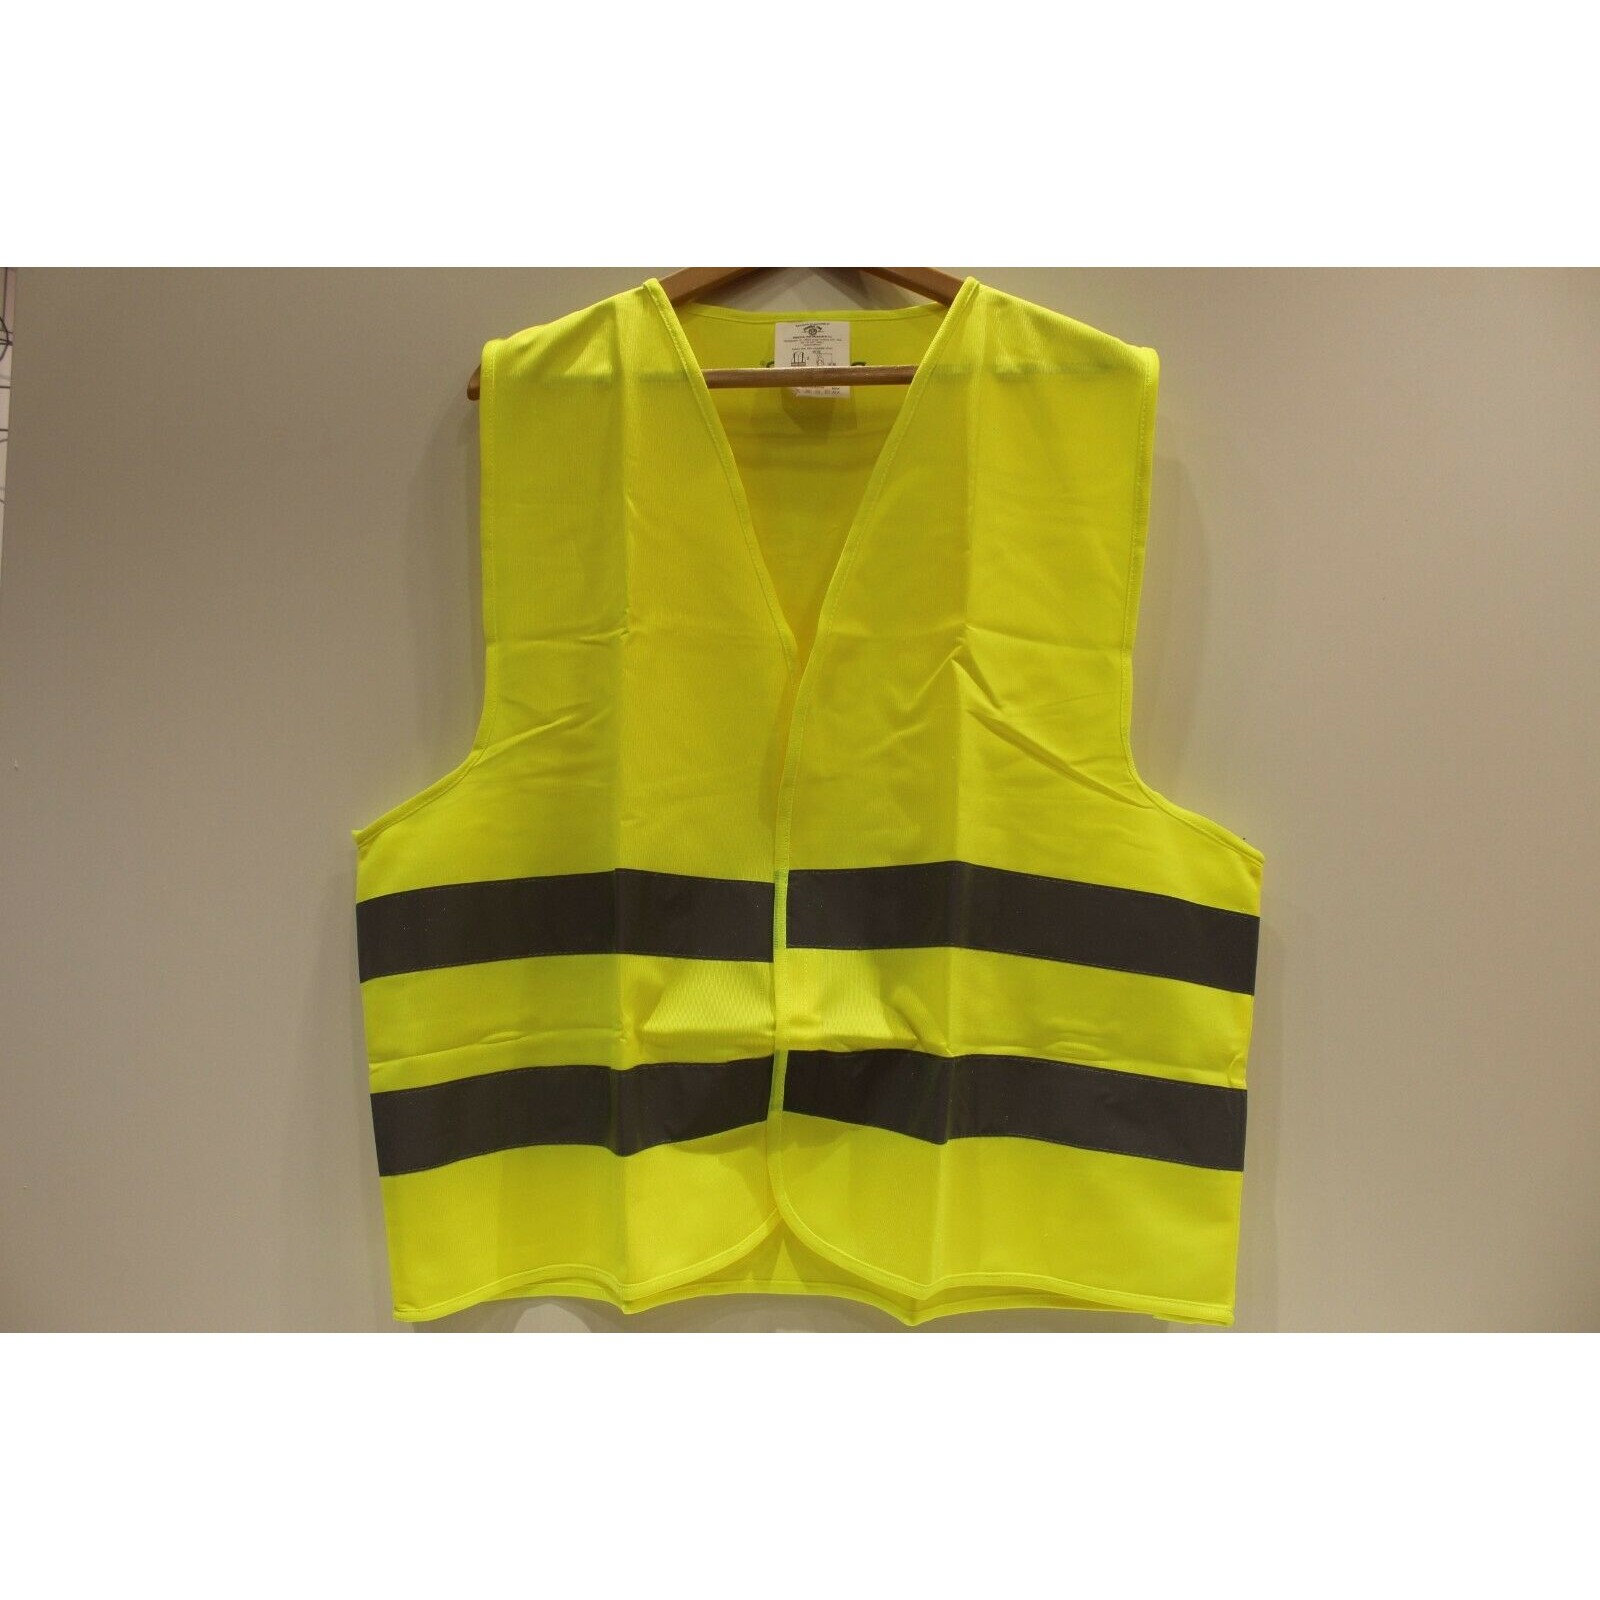 Sicherheitsweste (Warnweste) VESPA reflektierendes Gelb - Bekleidung -   - Mofa, Roller, Ersatzteile und Zubehör